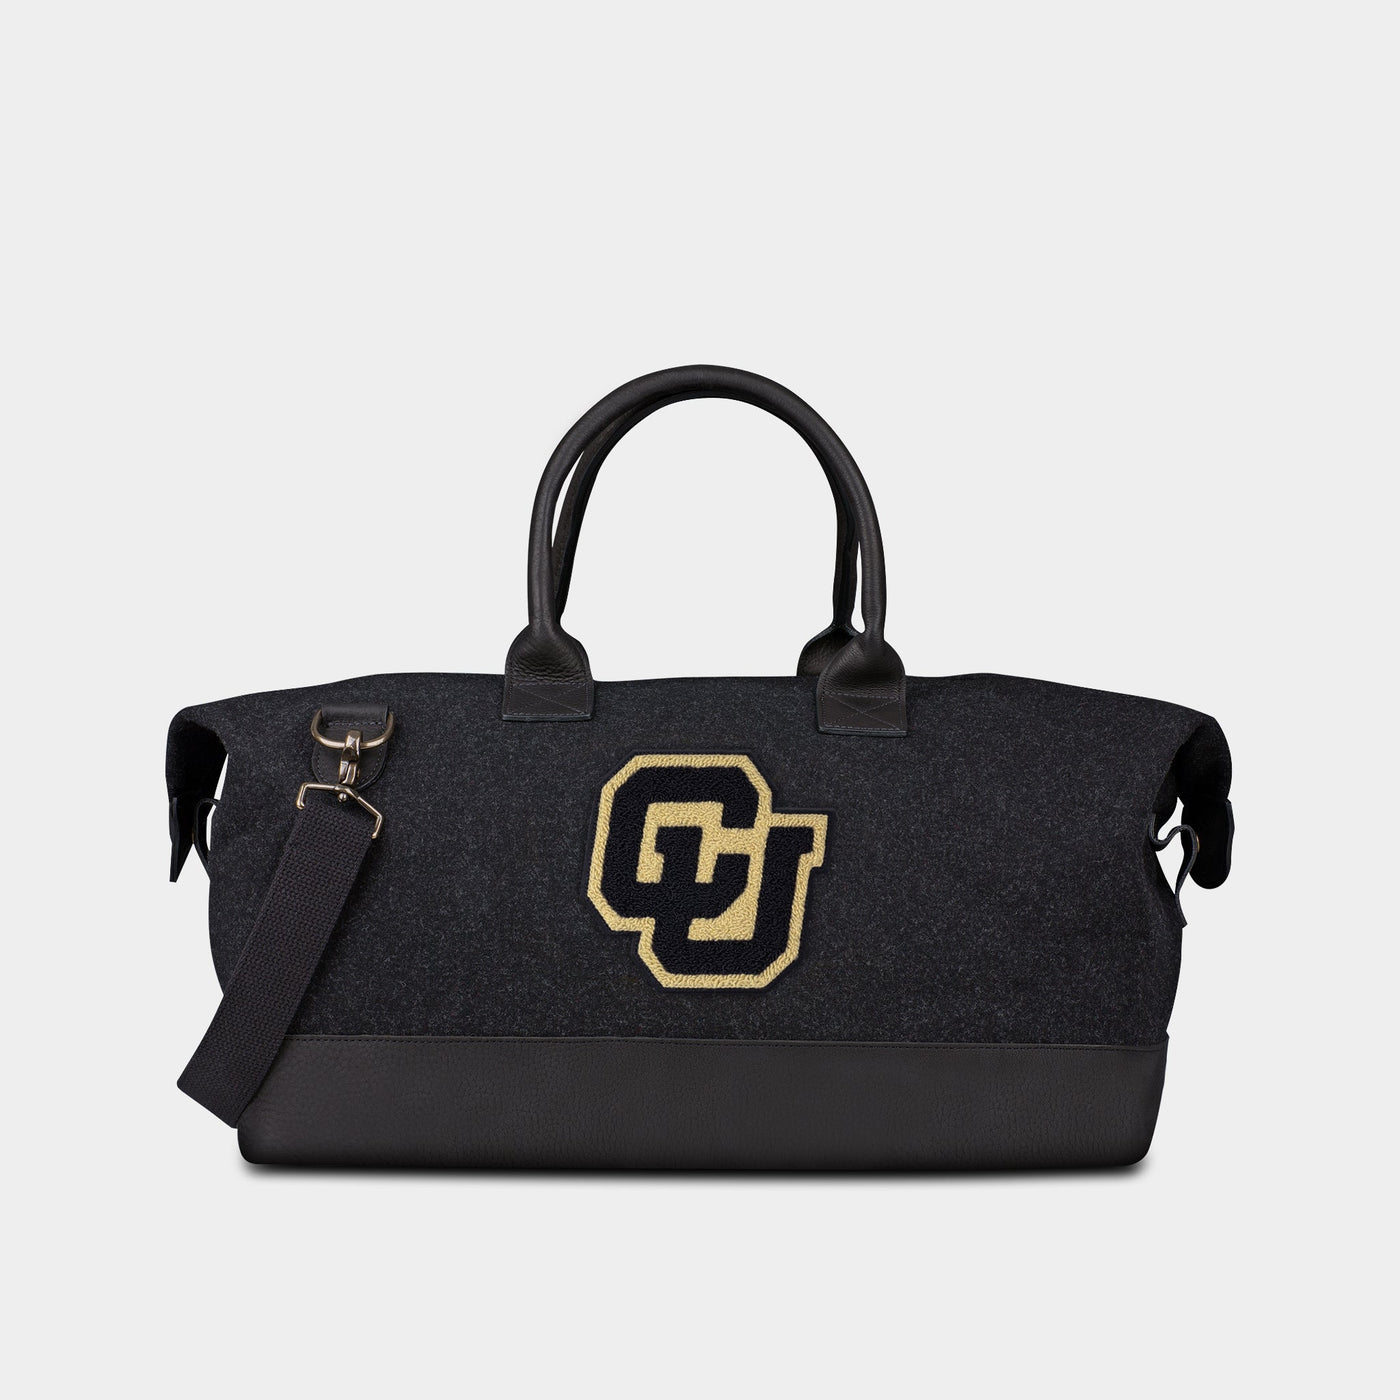 University of Colorado Boulder “CU” Weekender Duffle Bag | Heritage Gear